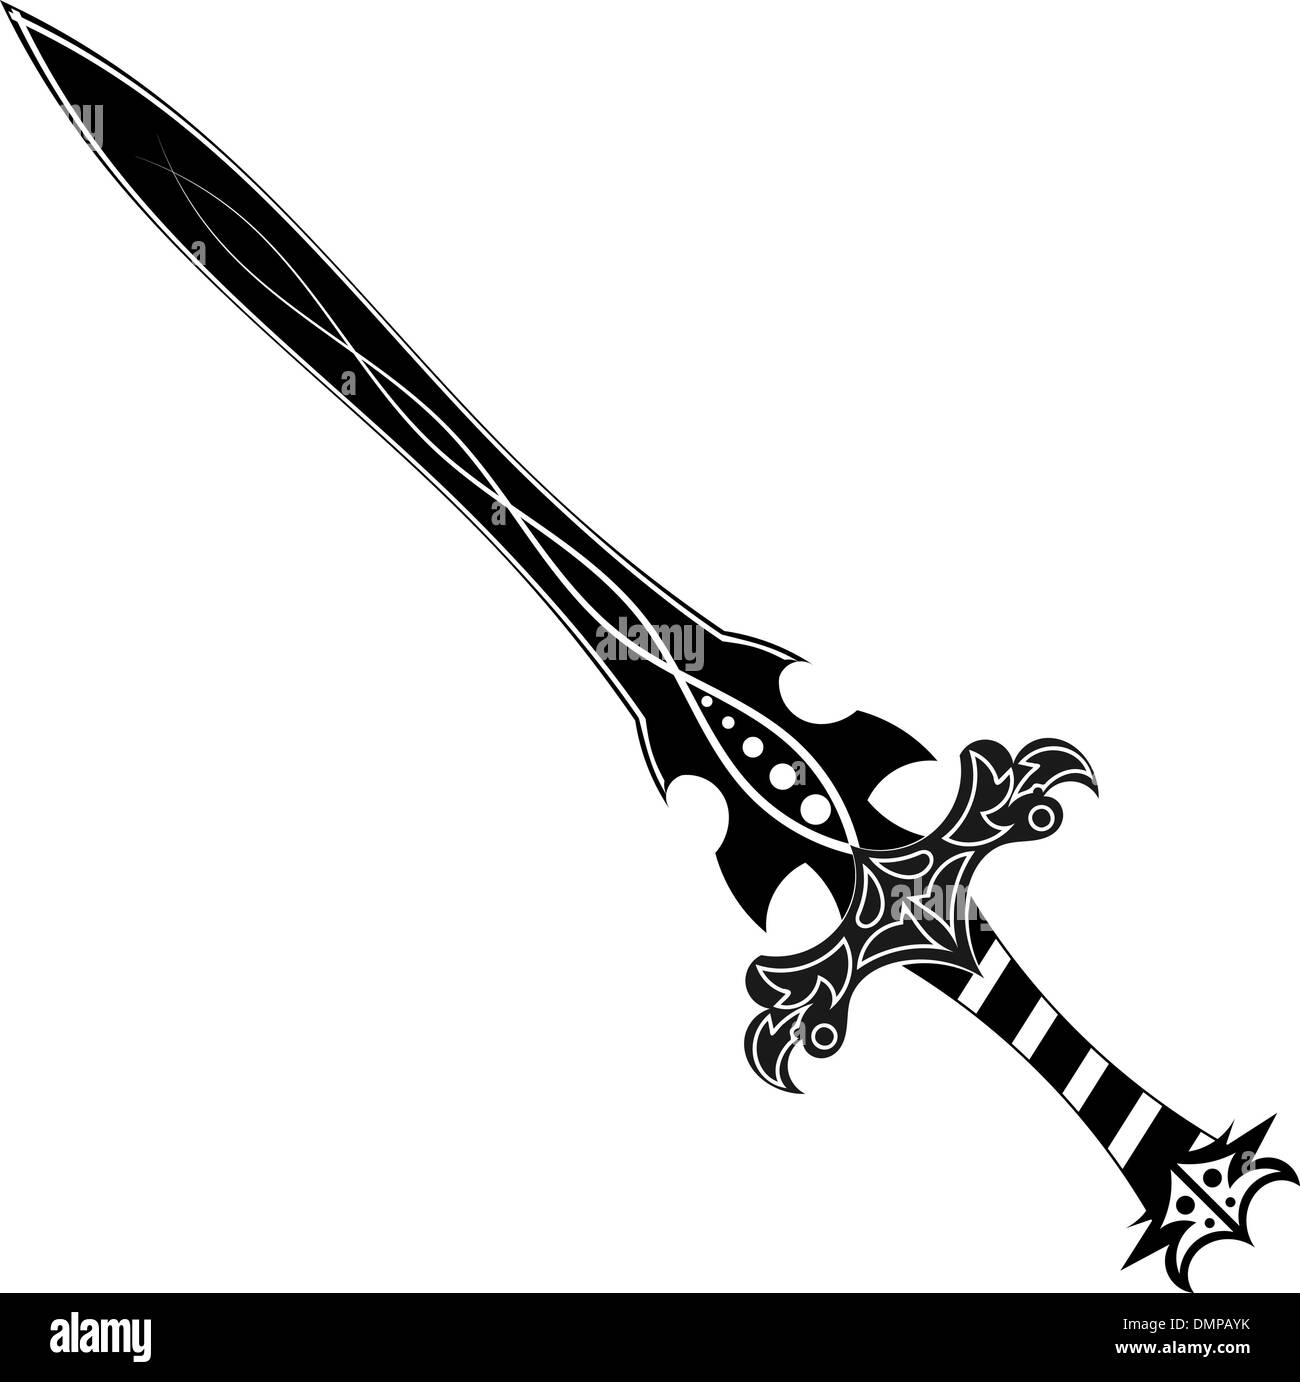 Sword tattoo Imágenes de stock en blanco y negro - Alamy